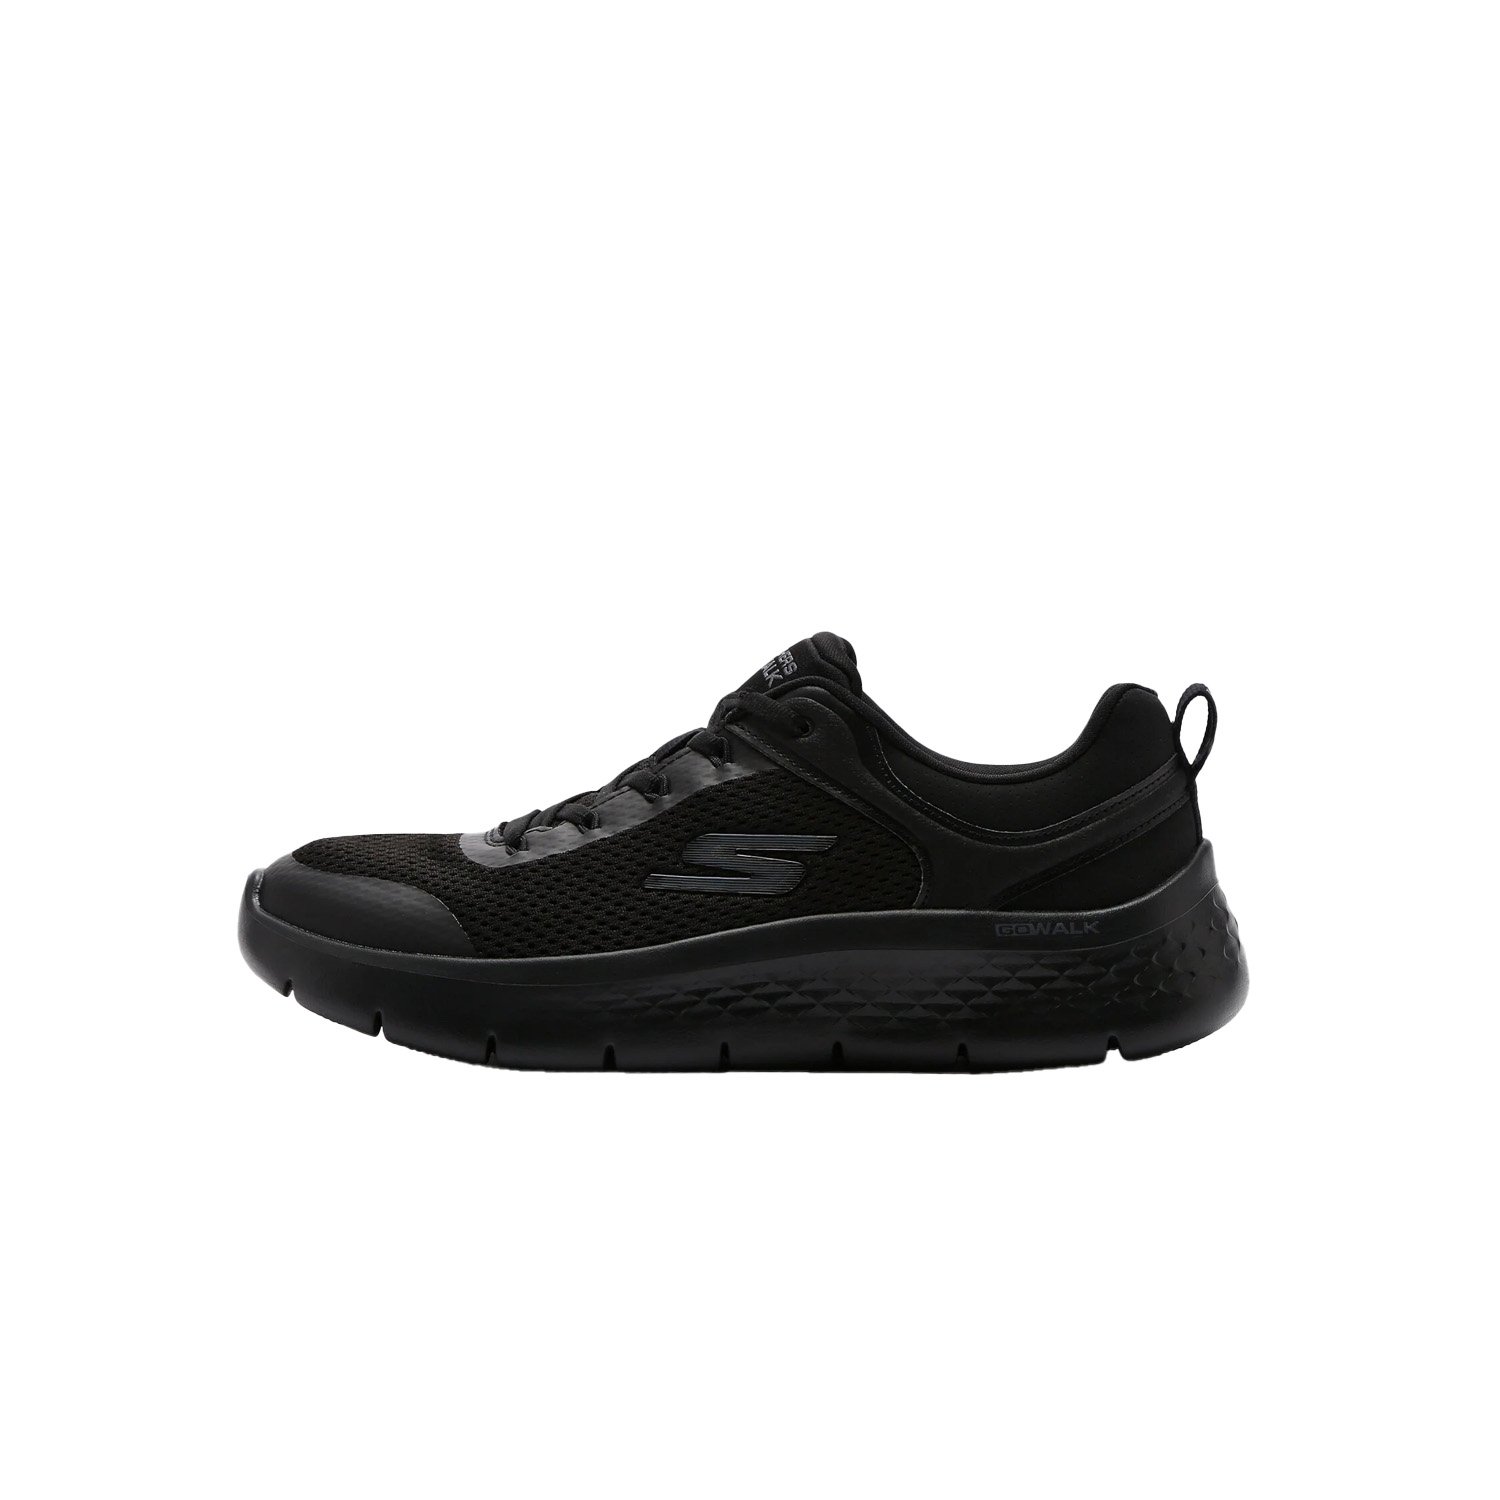 Skechers Go Walk Flex Kadın Yürüyüş Ayakkabısı - Siyah - 1